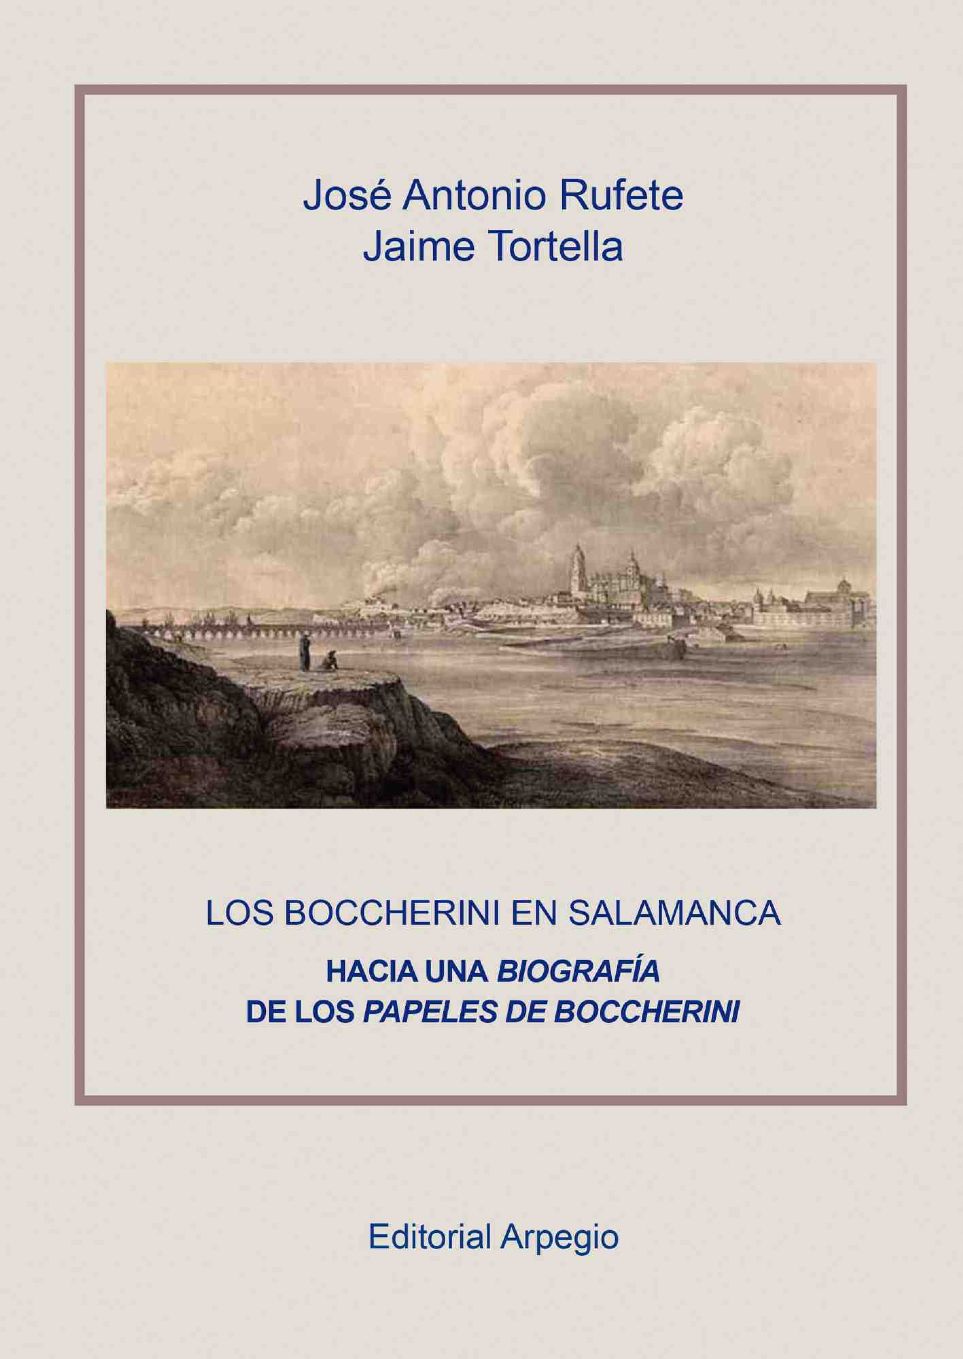 Libro Los Boccherini en Salamanca de José Antonio Rufete y Jaime Tortella [Editorial Arpegio]